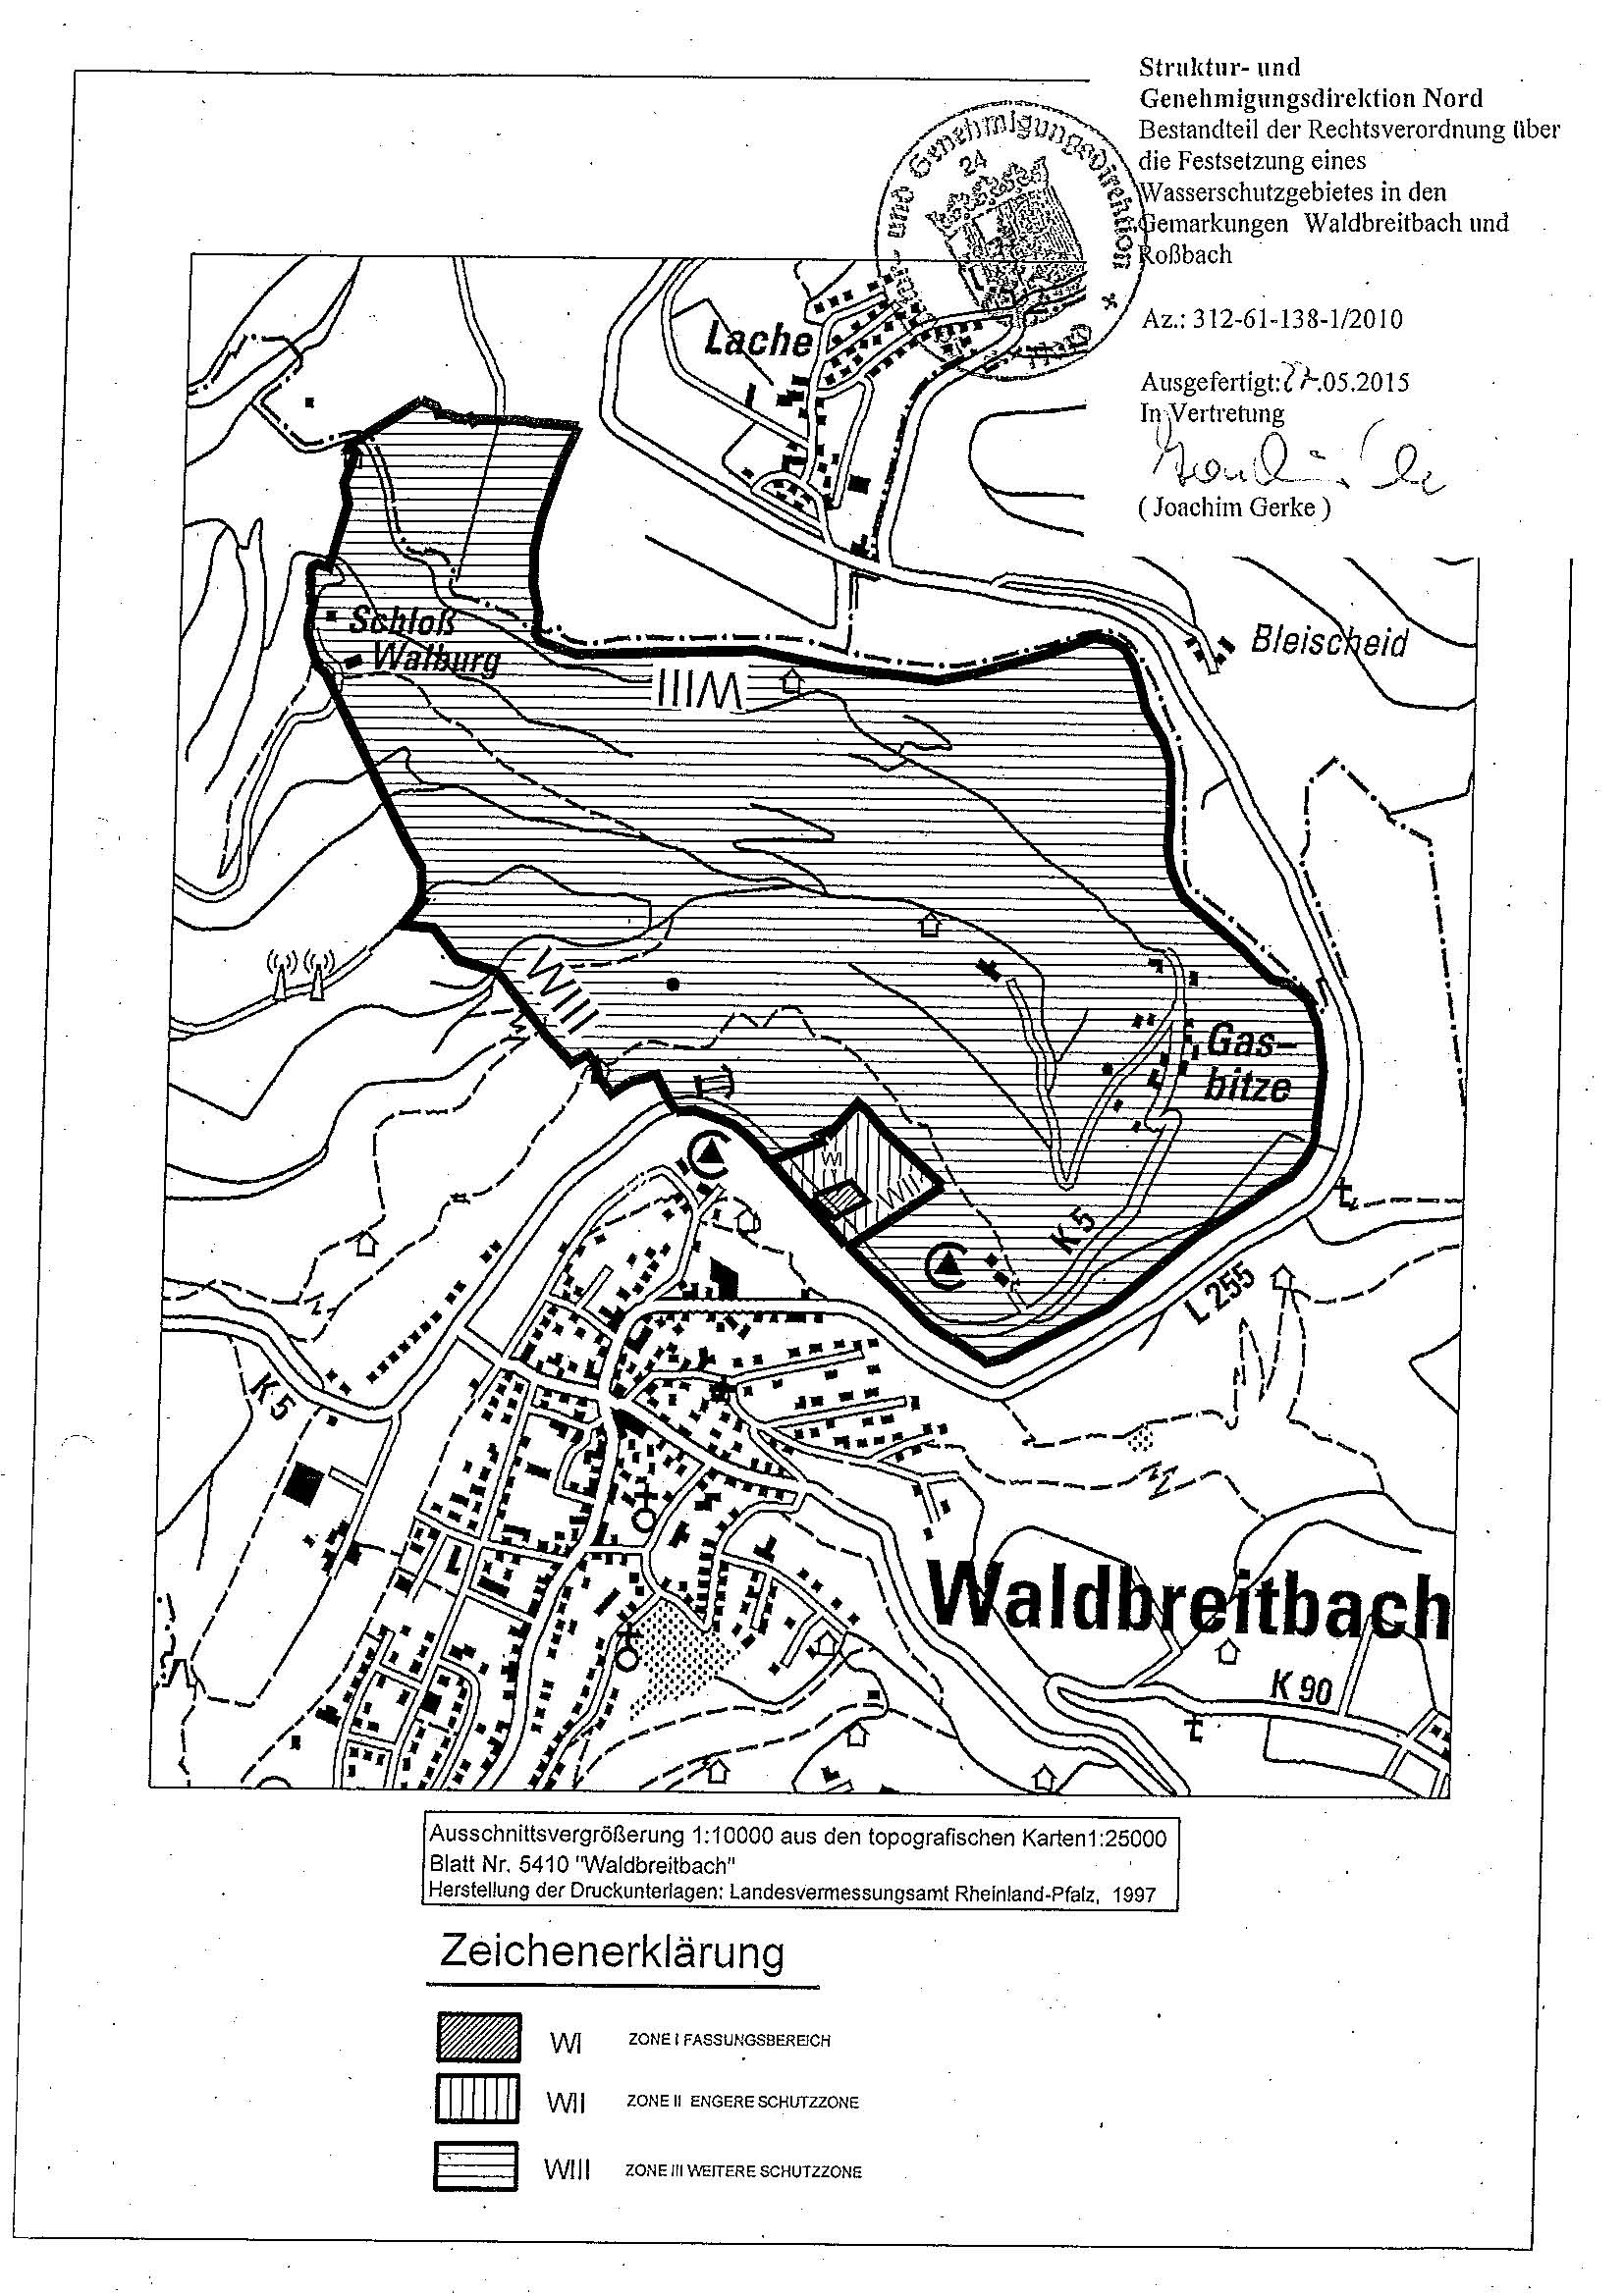 Zu sehen ist eine Übersichtskarte des Wasserschutzgebietes Waldbreitbach/Roßbach (Brunnen Waldbreitbach)